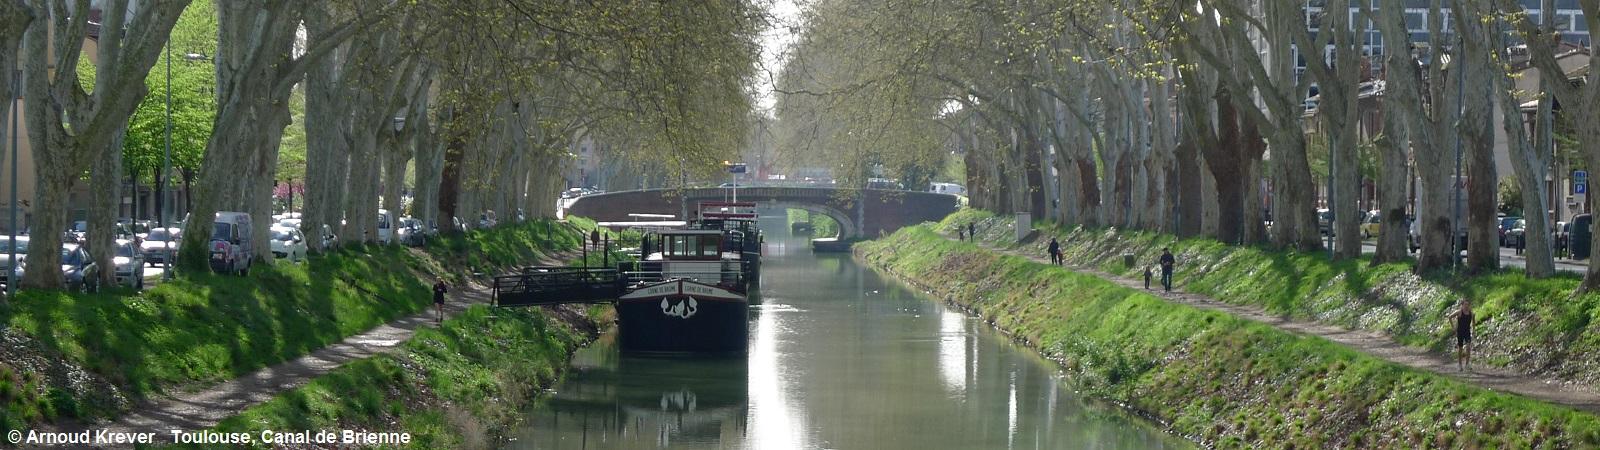 13Toulouse-S (92) Toulouse (35) Canal de Brienne